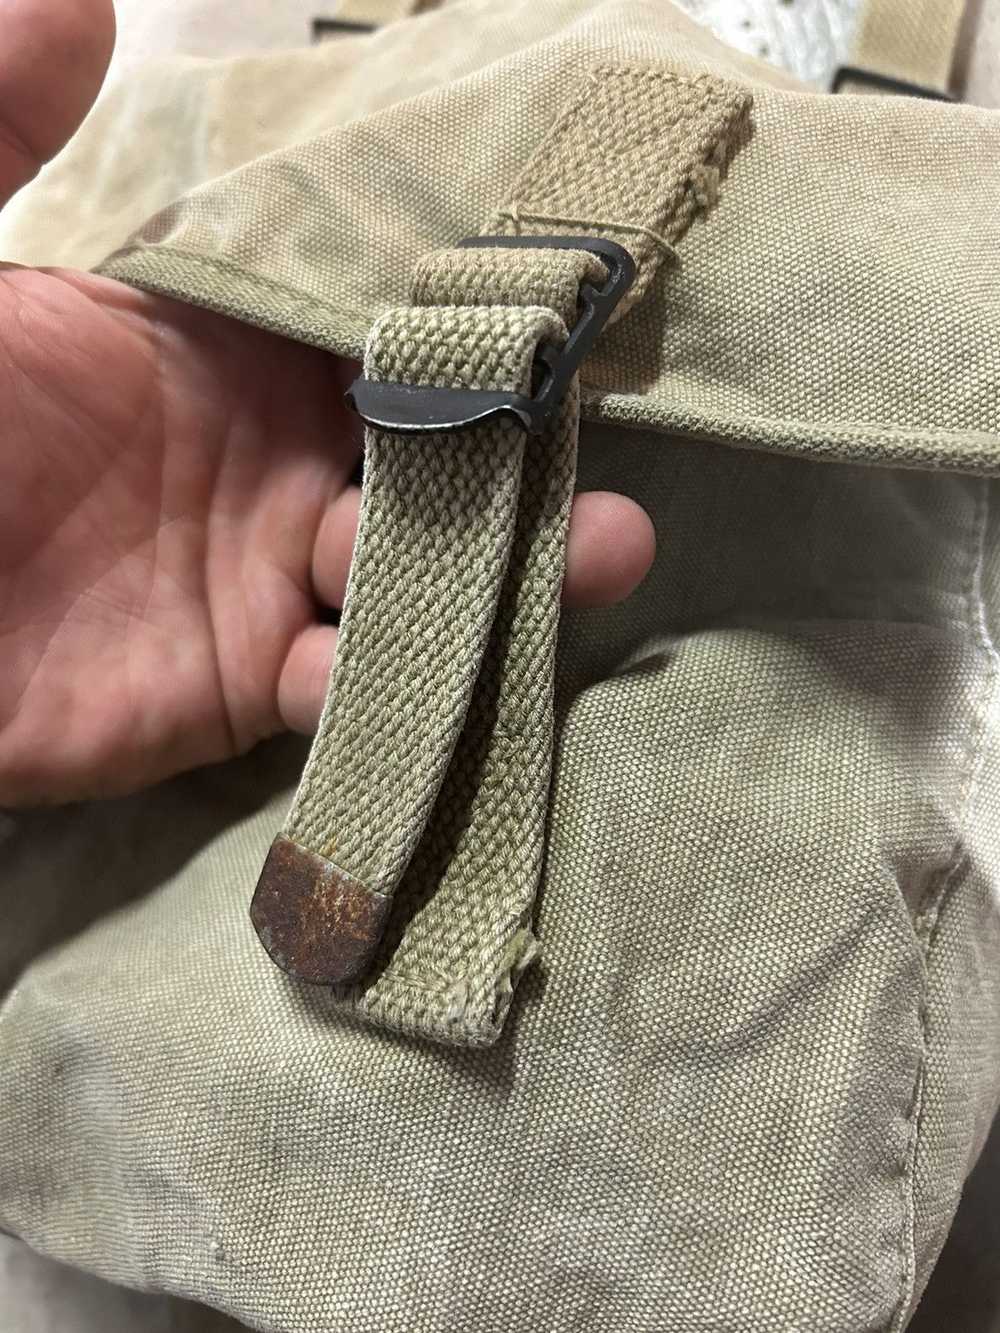 Military × Vintage Musette Messenger Bag, U.S Arm… - image 4